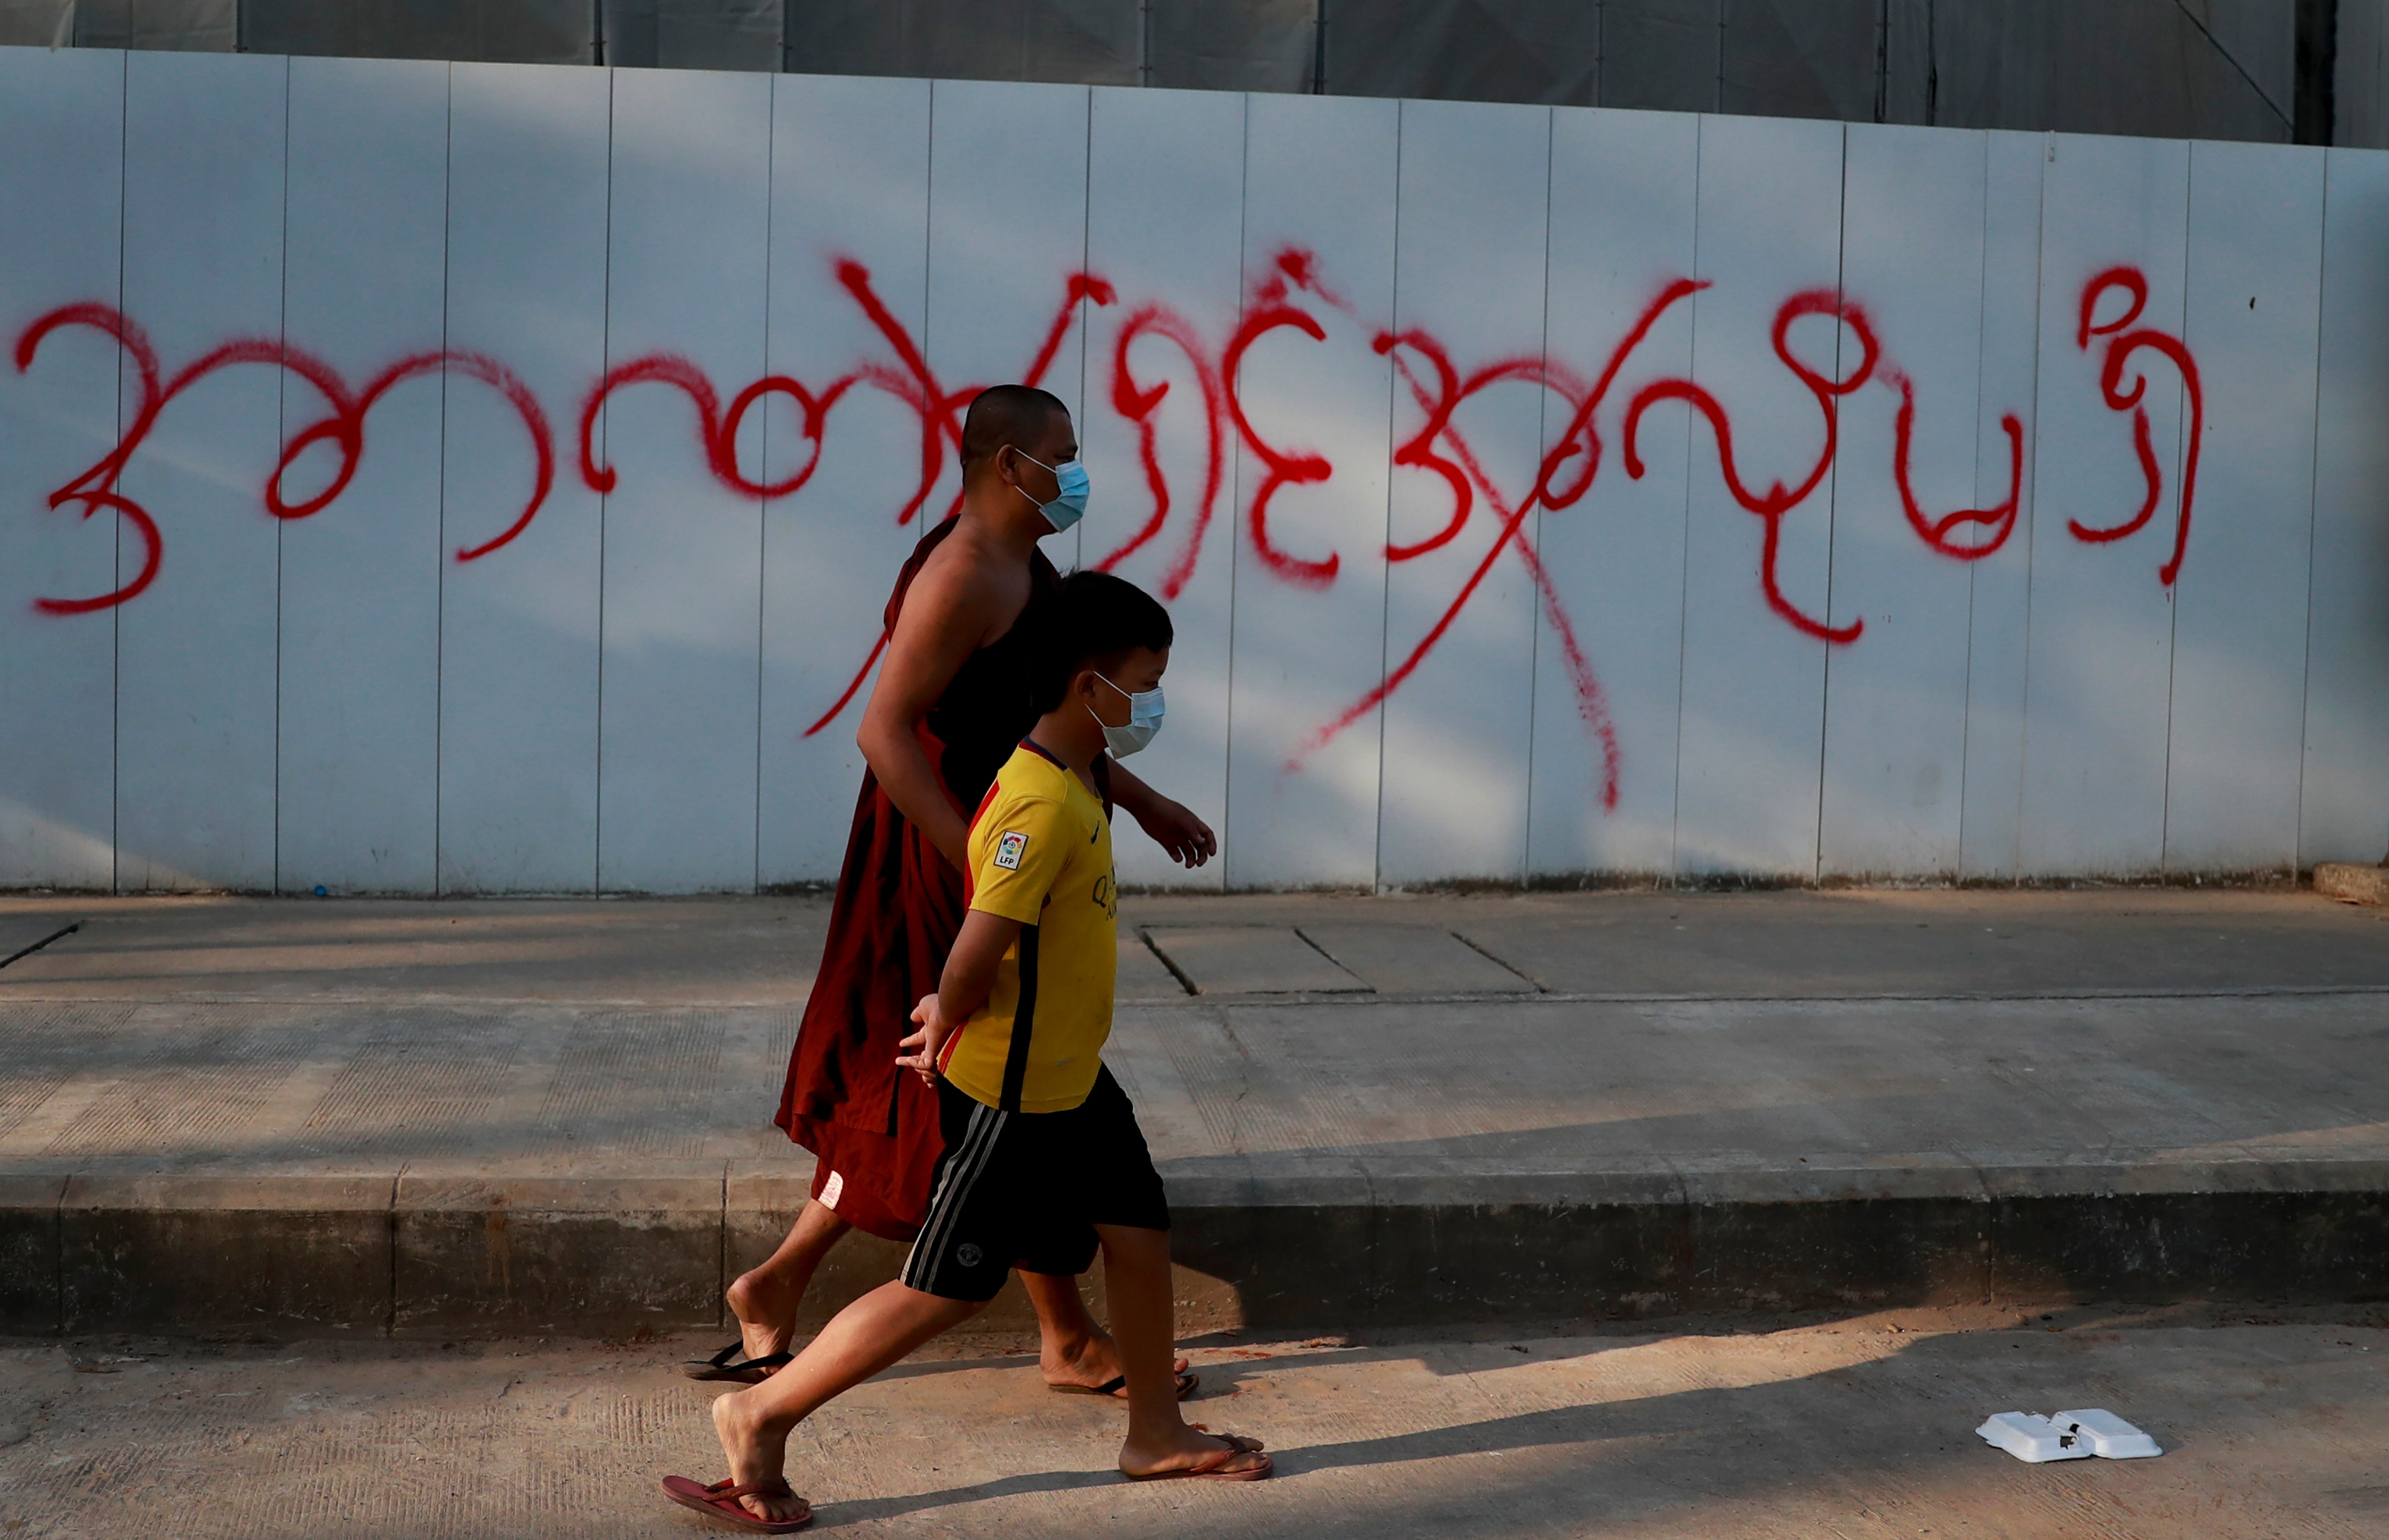 Burma blocks Facebook as resistance to coups d’état